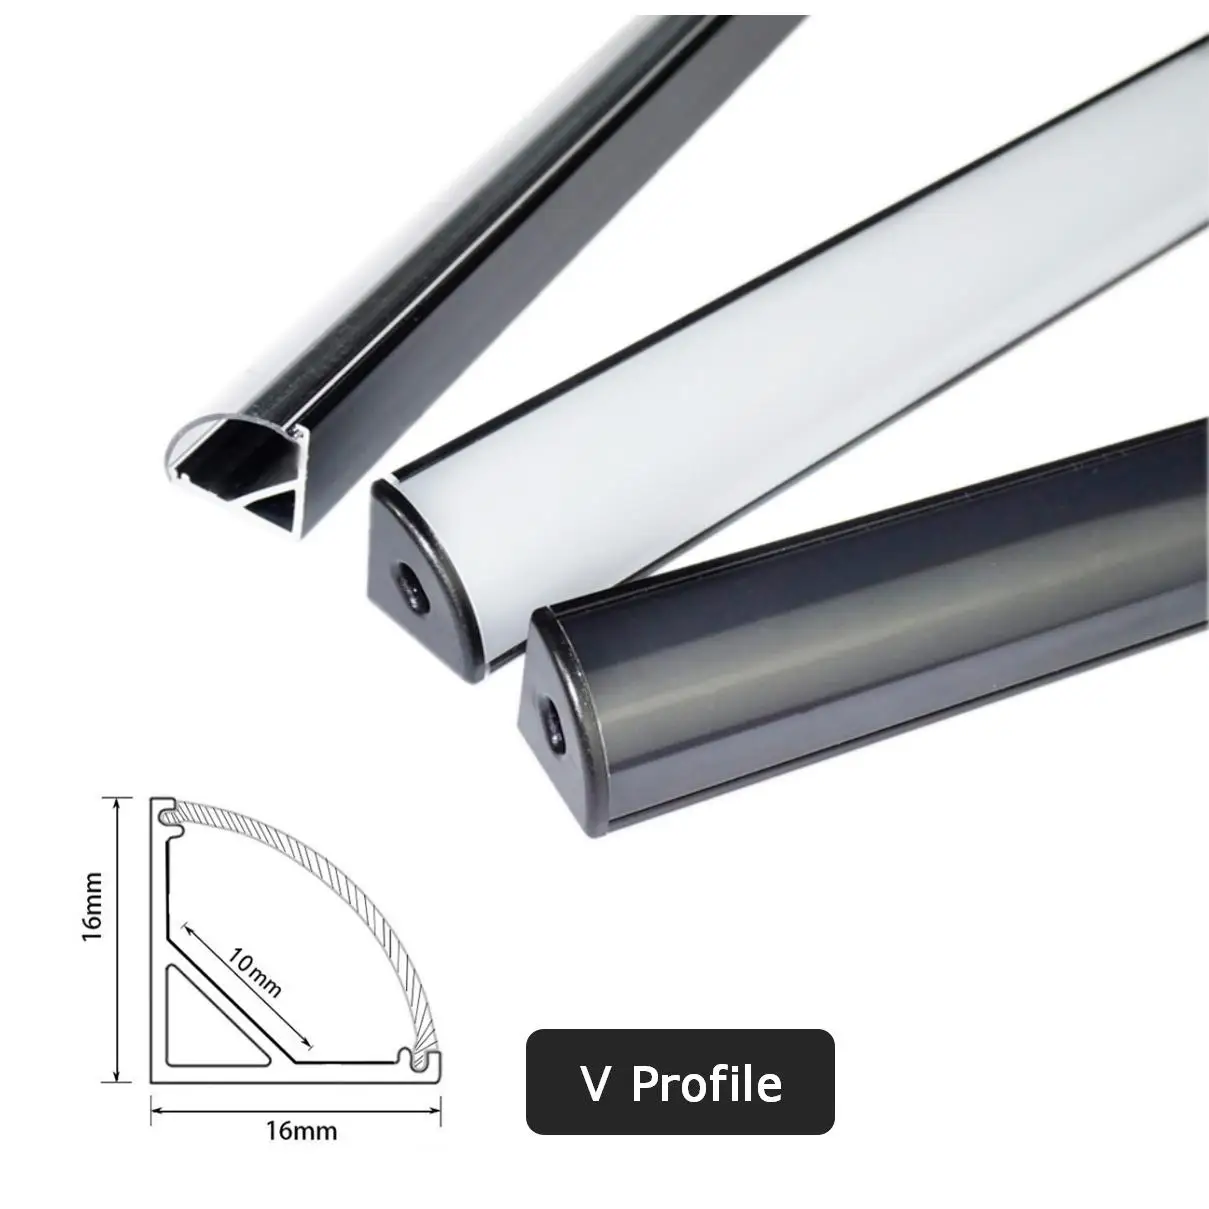 0.5m Black V/U/YW LED Aluminum Profile For 5050 5630 Corner Channel Case Holder Milky Cover Cabinet Closet LED Bar Strip Lights images - 6